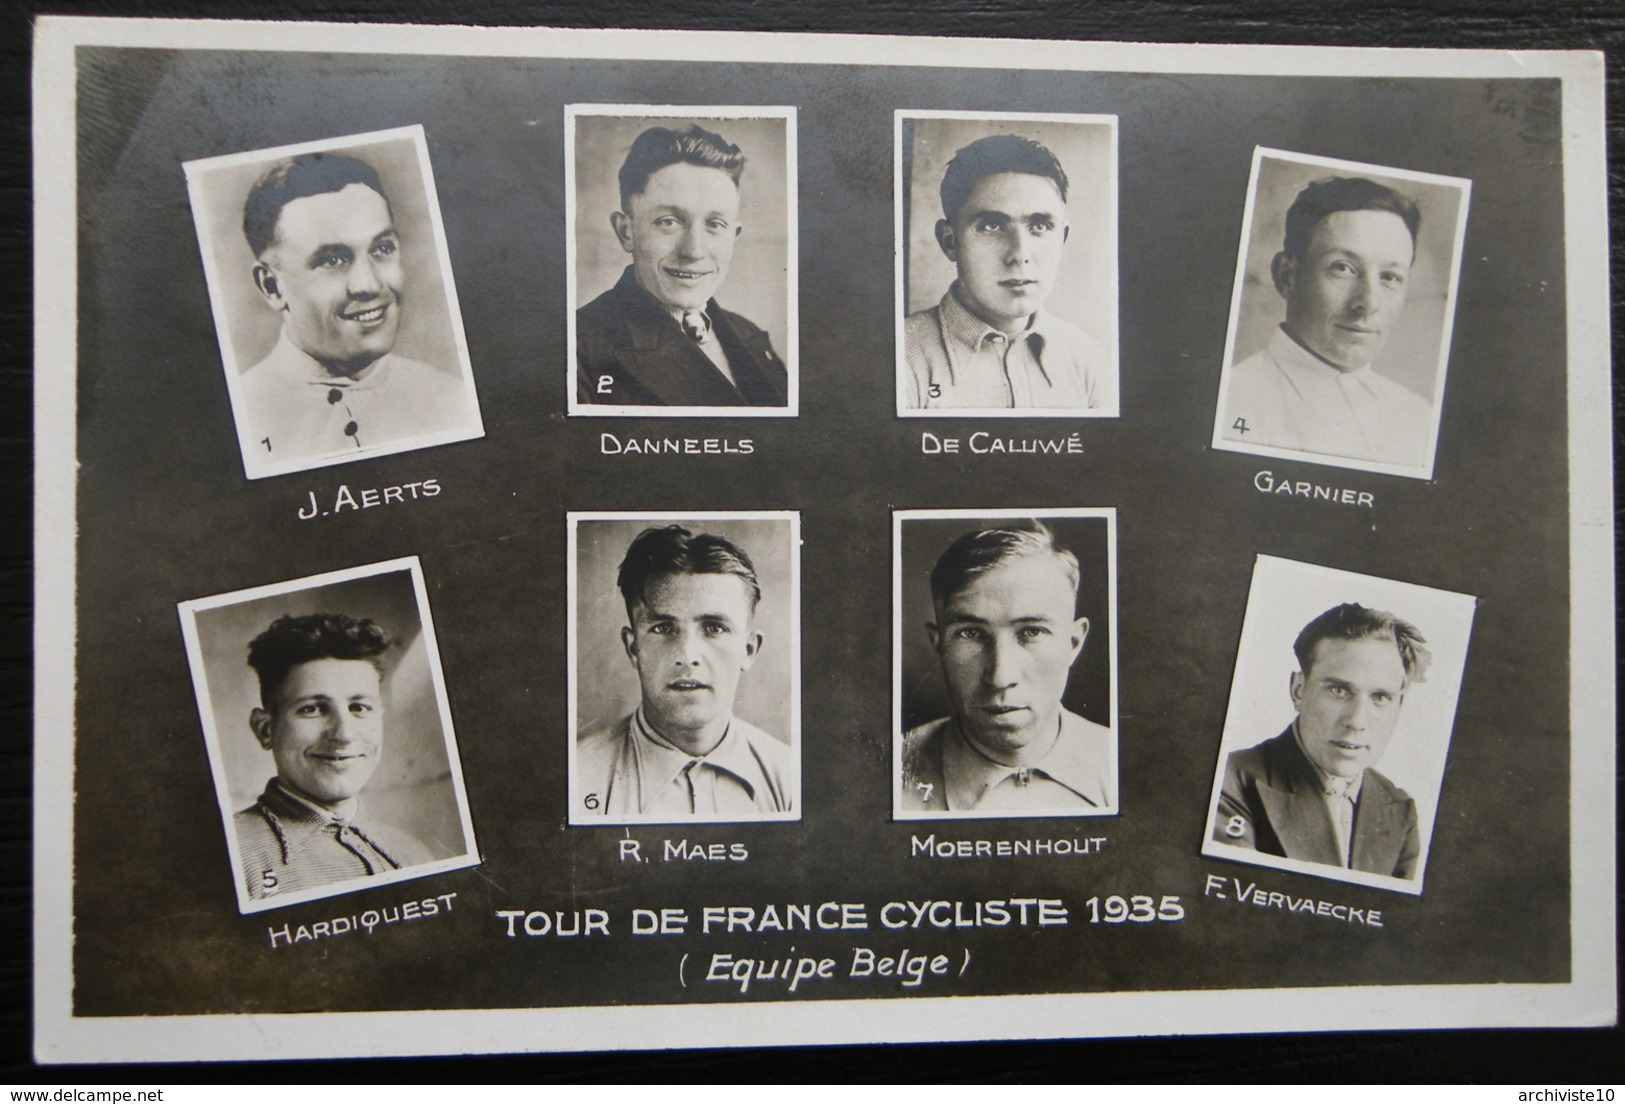 CARTE TOUR DE FRANCE CYCLISTE 1935 EQUIPE BELGE - Cyclisme